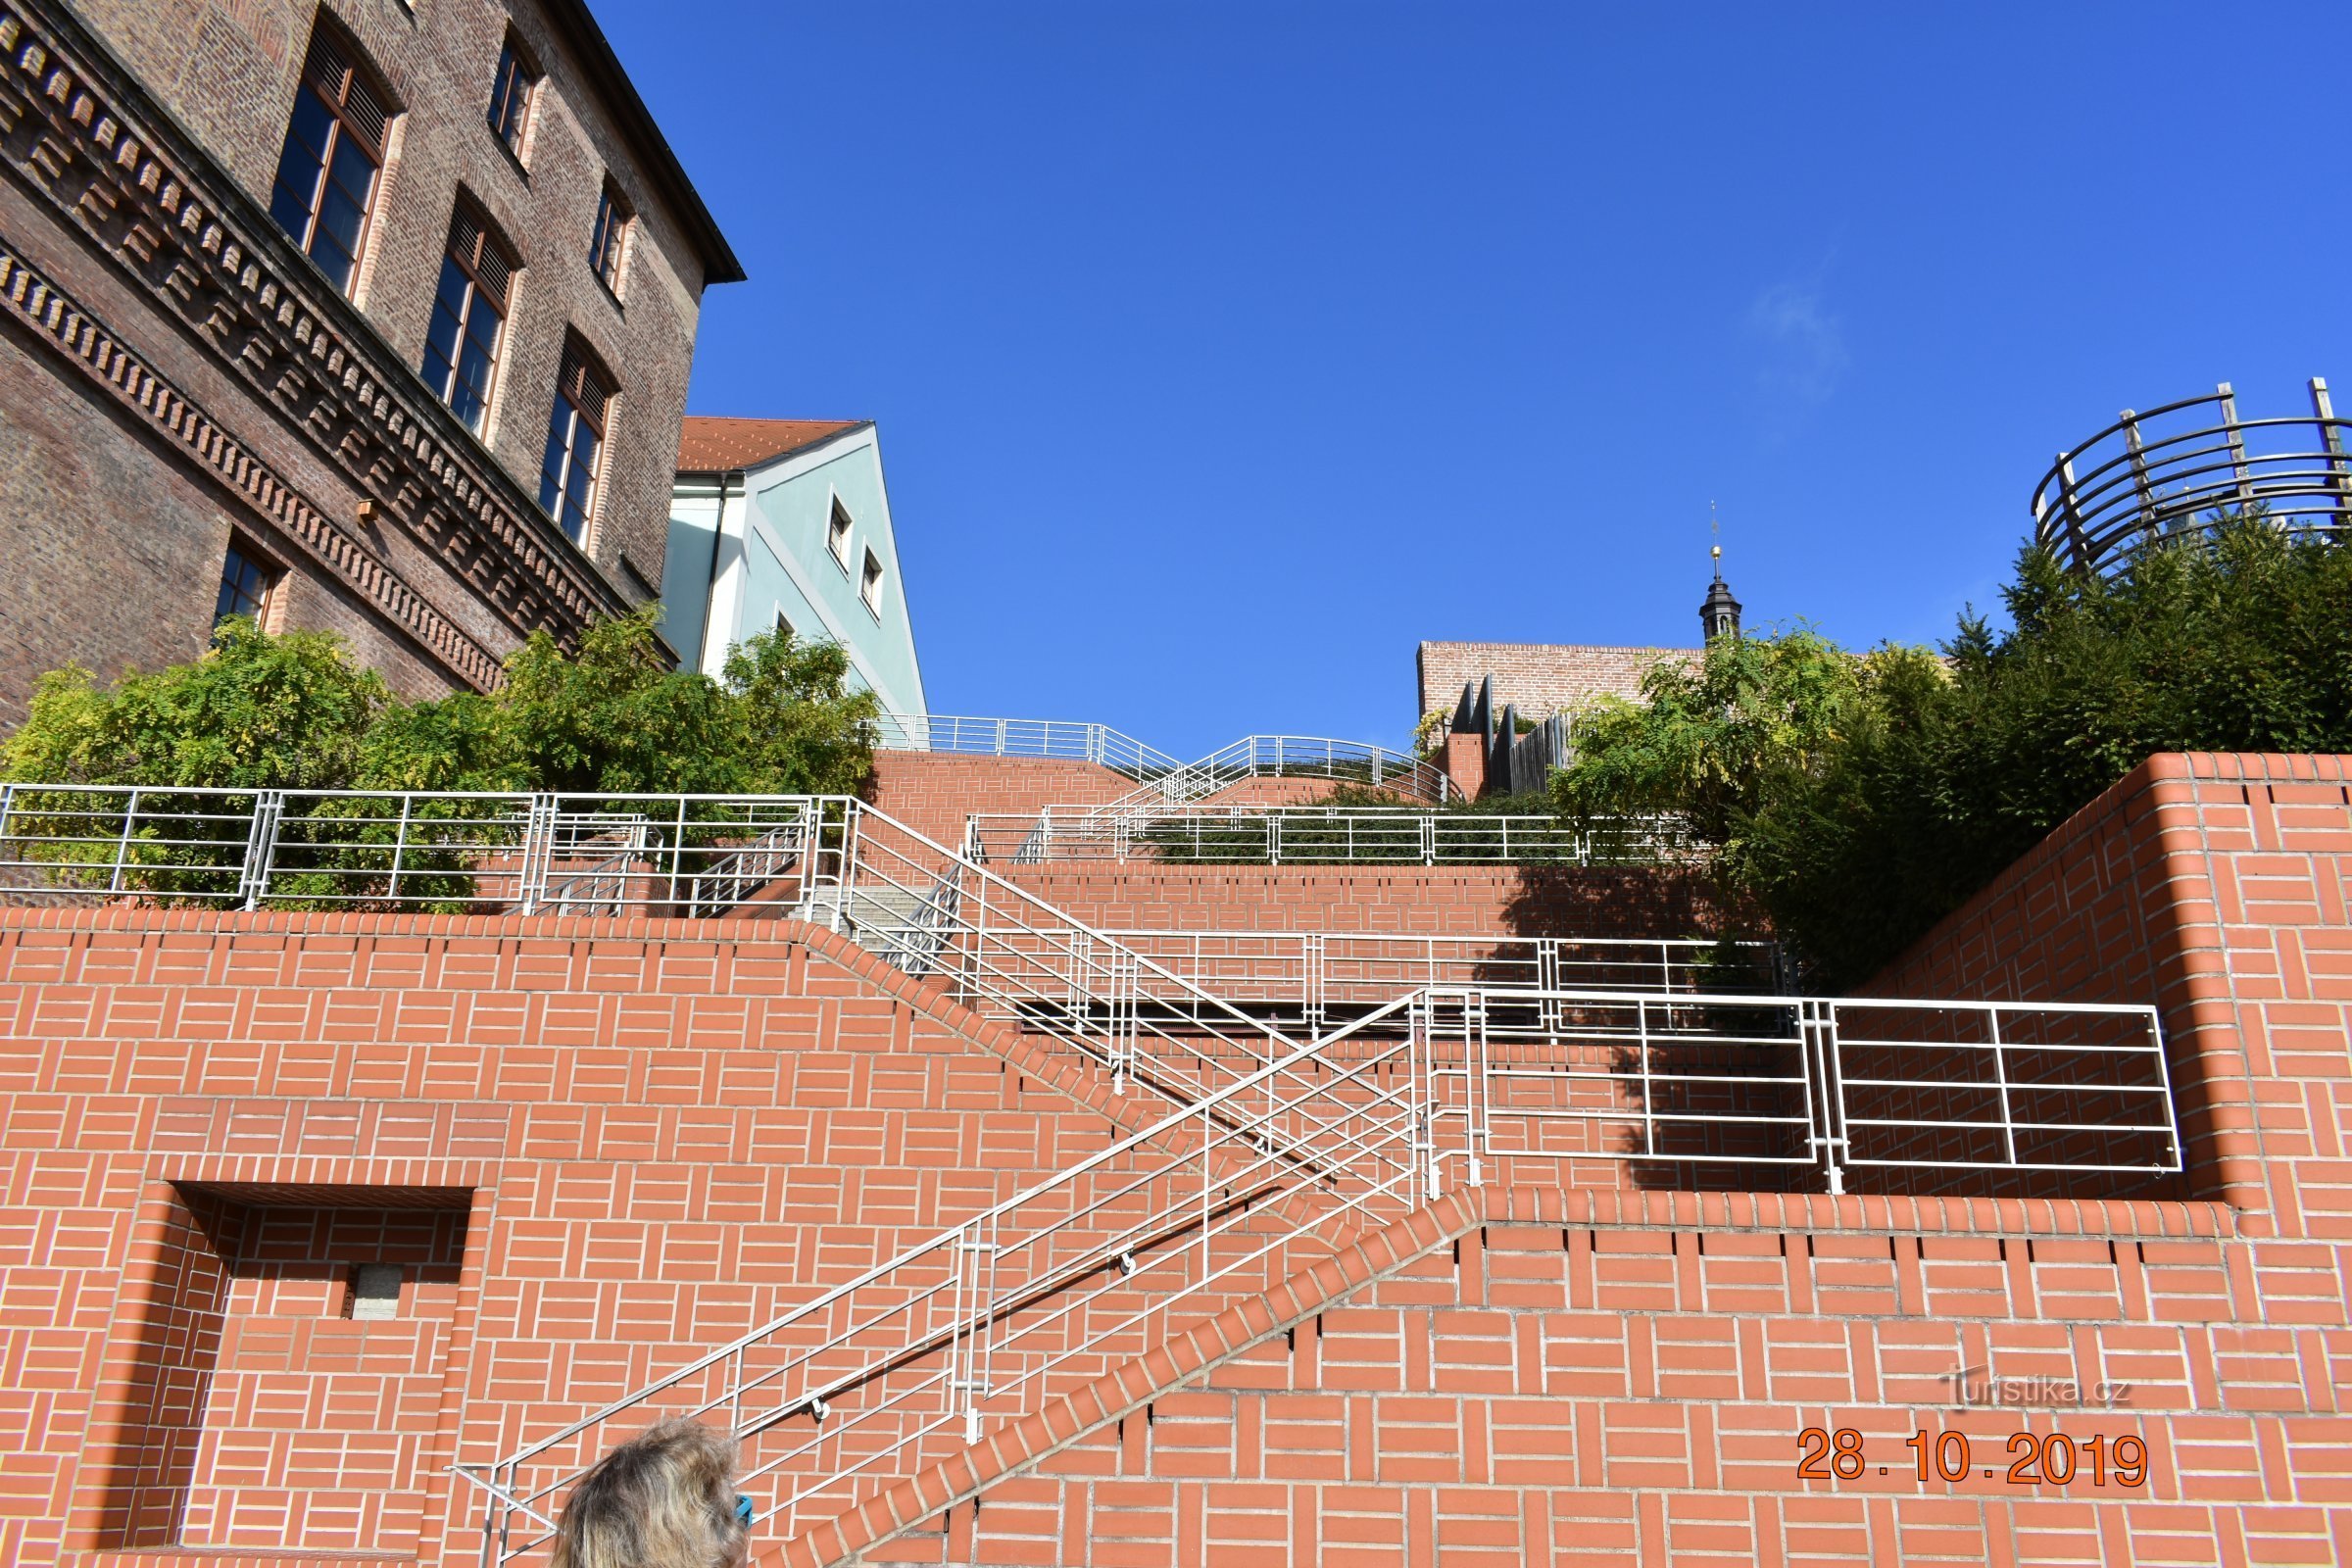 Bono publico lépcsőház Hradec Králové-ban a 2019-es felújítás után